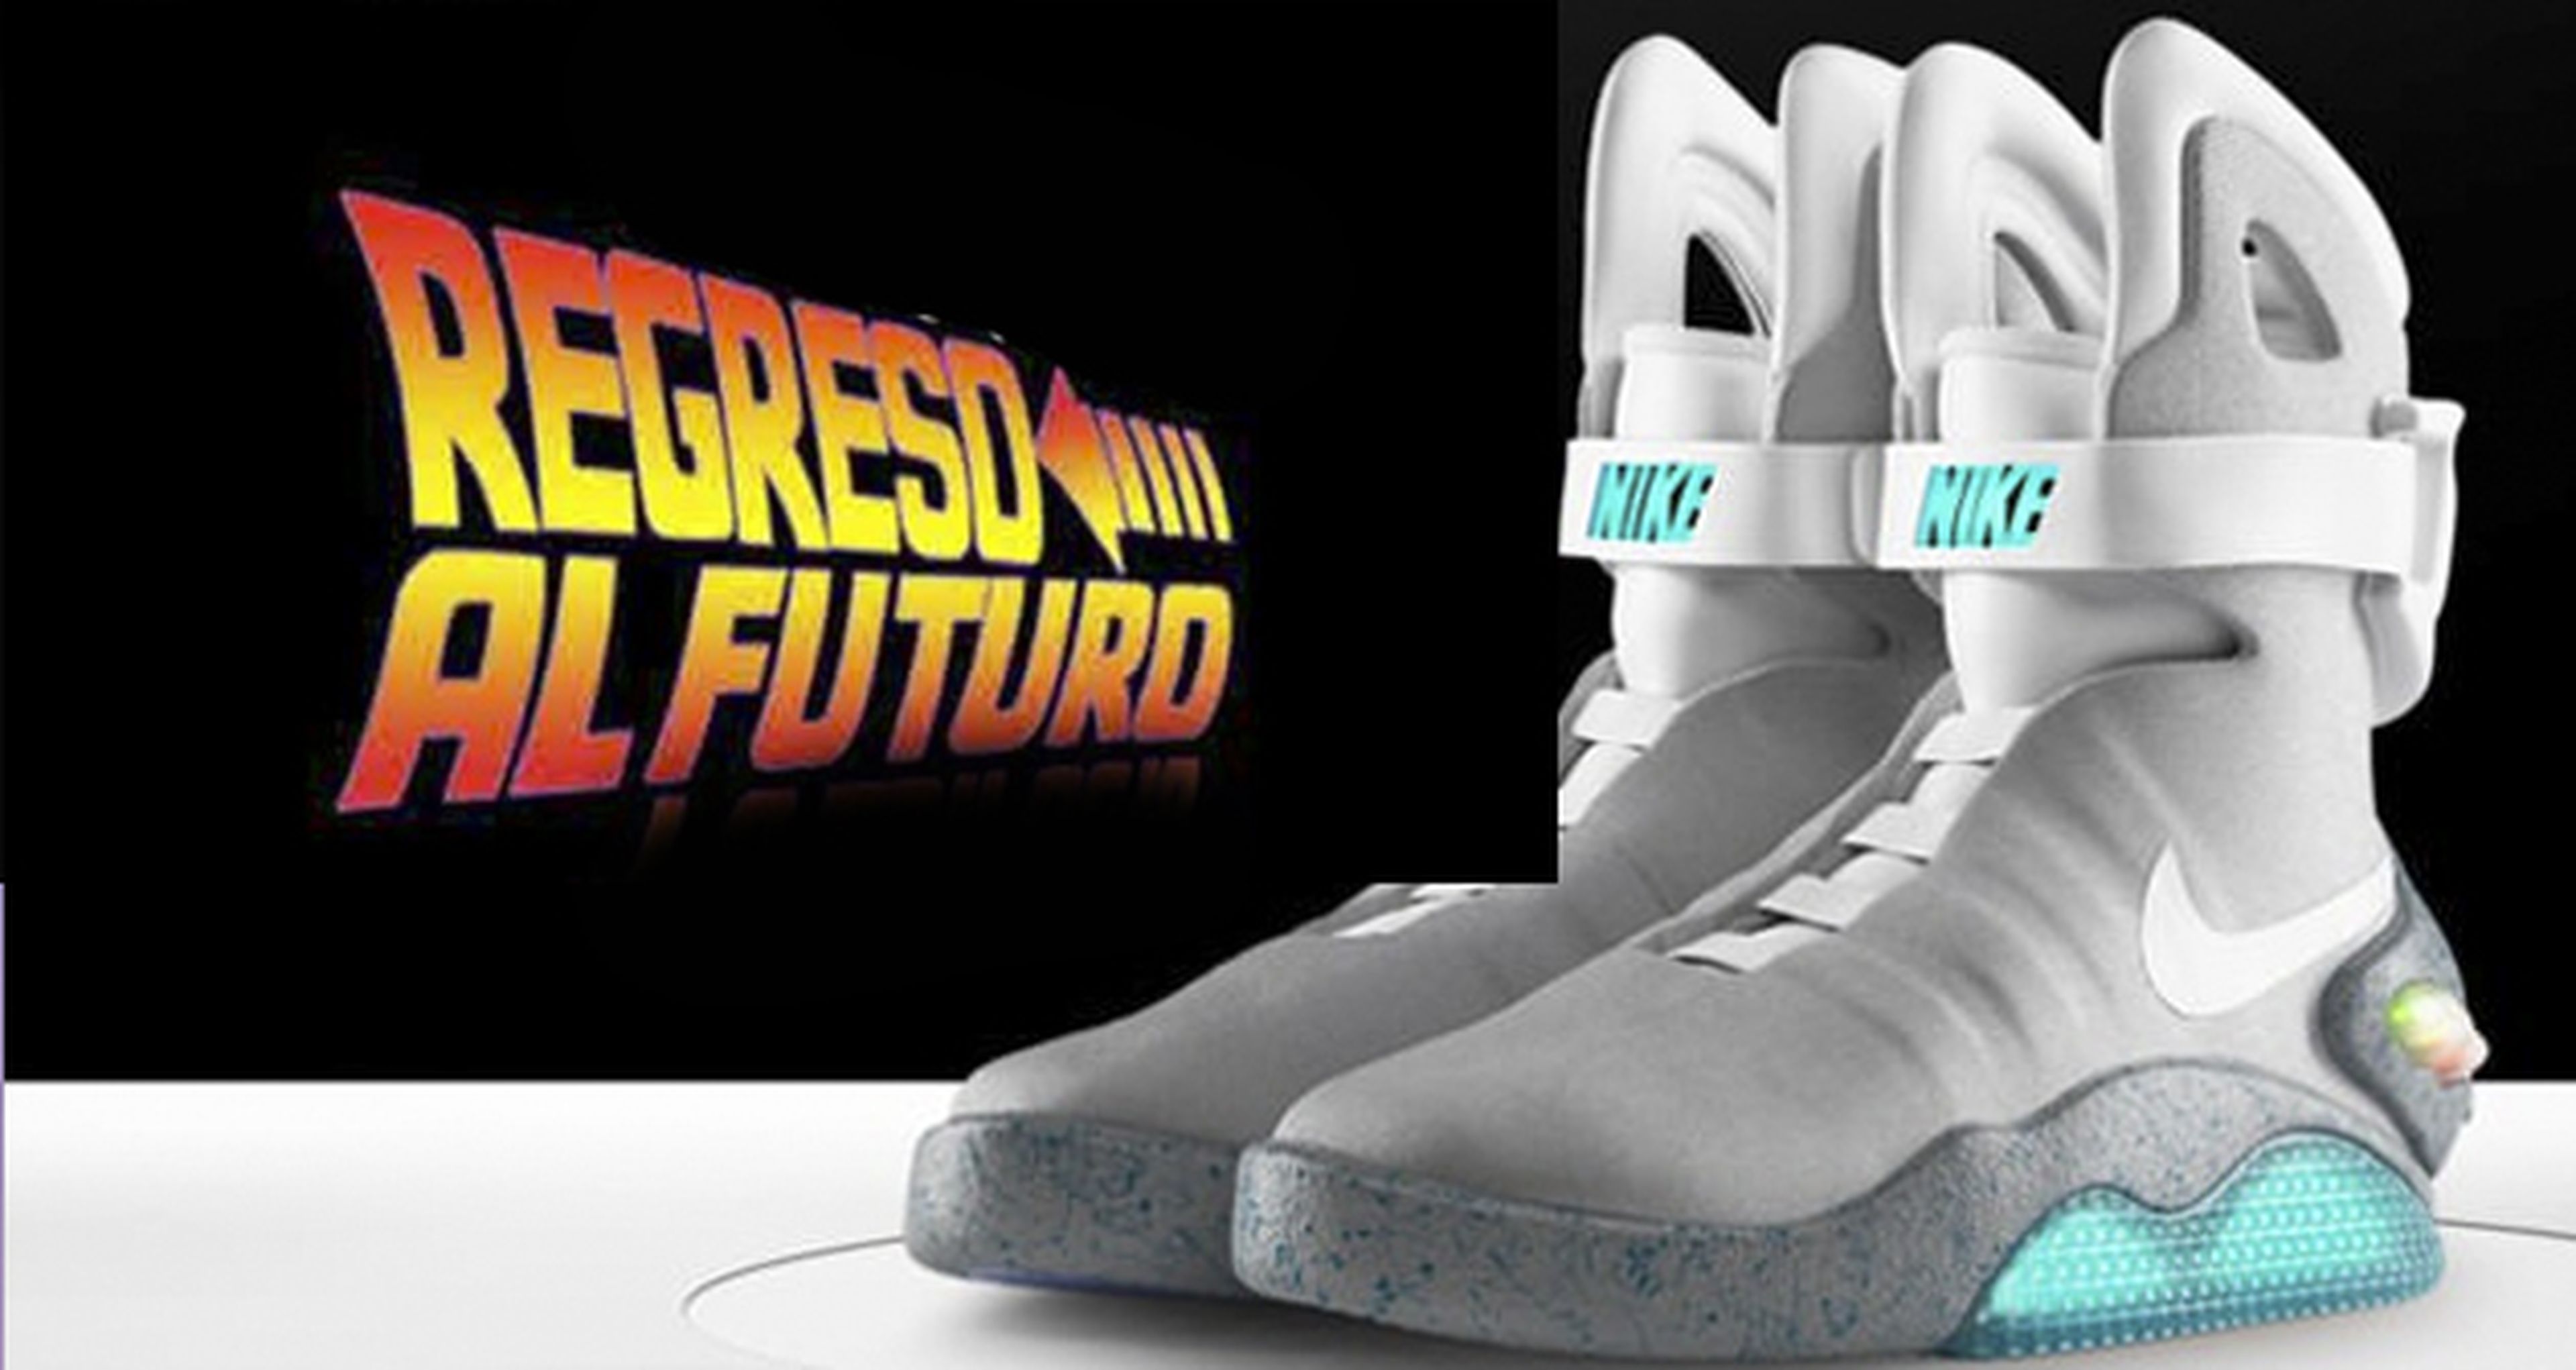 Regreso futuro: Michael Fox se prueba las Nike Air MAG que salen a venta en 2016 | Consolas